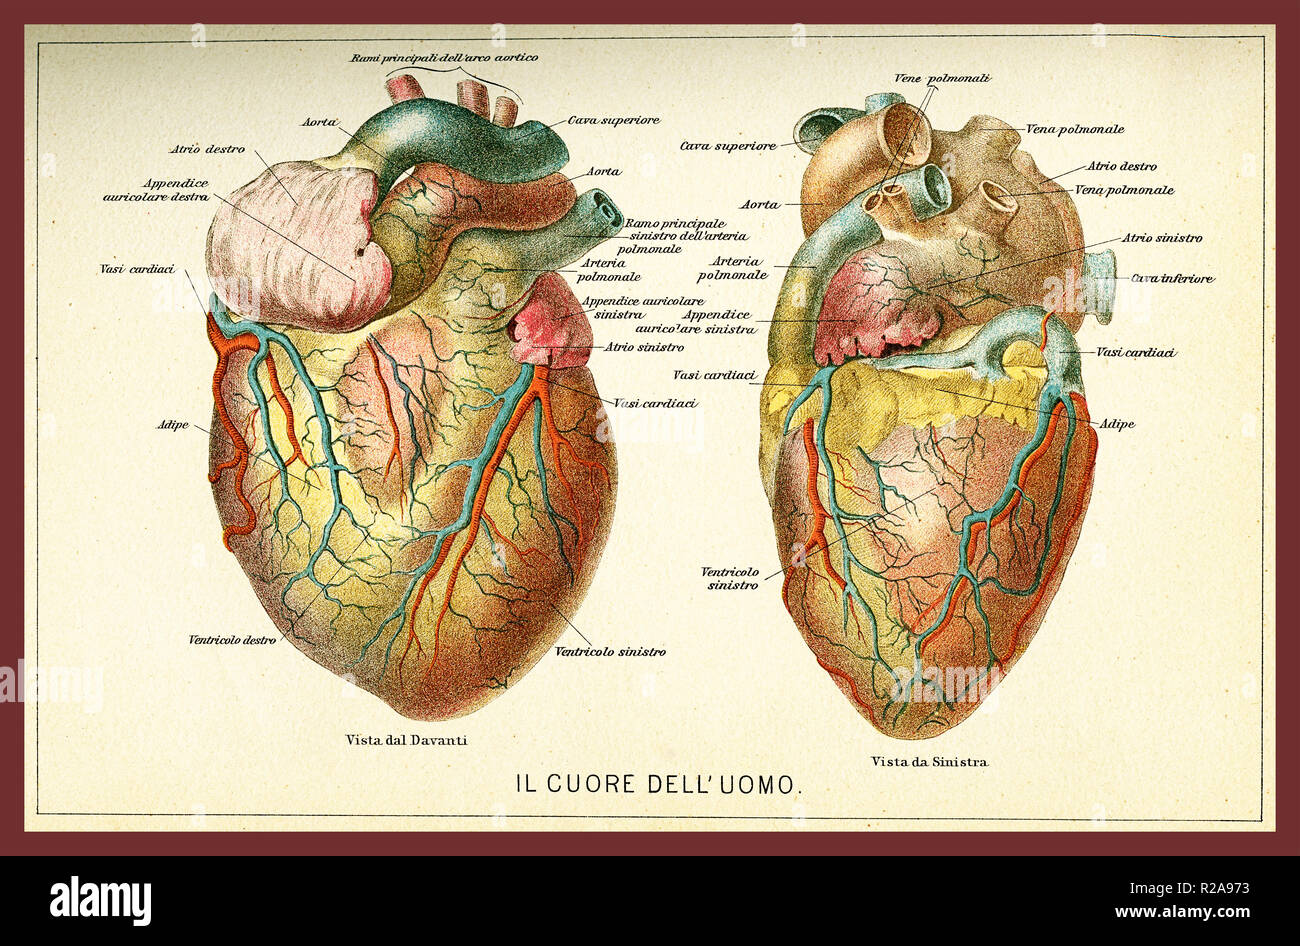 Vintage tabella colori di anatomia, il cuore umano con descrizioni anatomiche in italiano Foto Stock